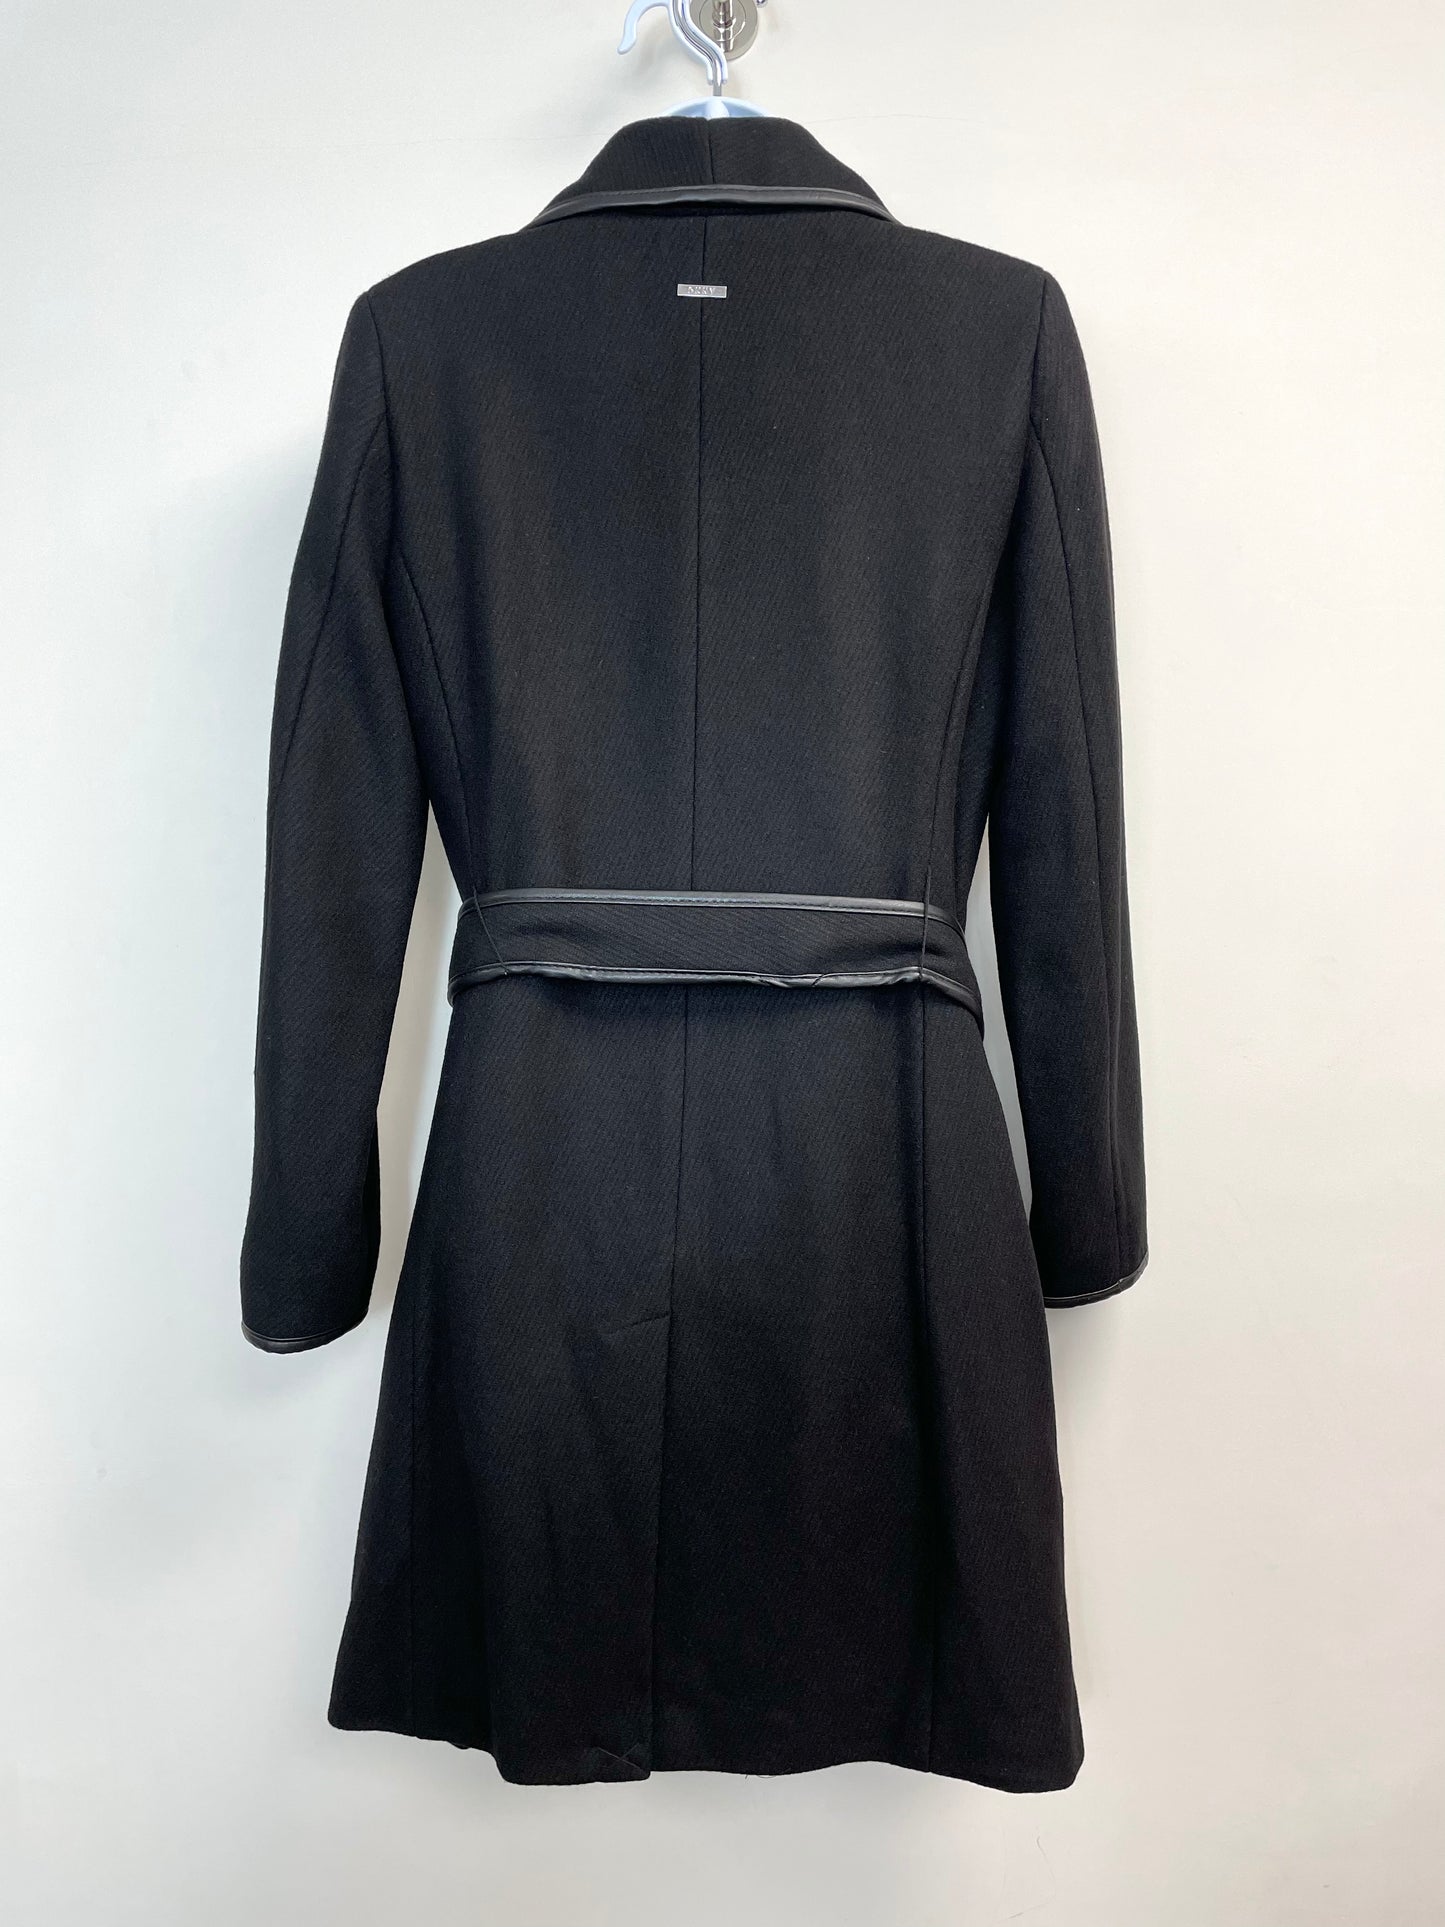 Women’s Wool Blend Leather Trim Wrap Coat in Black XS